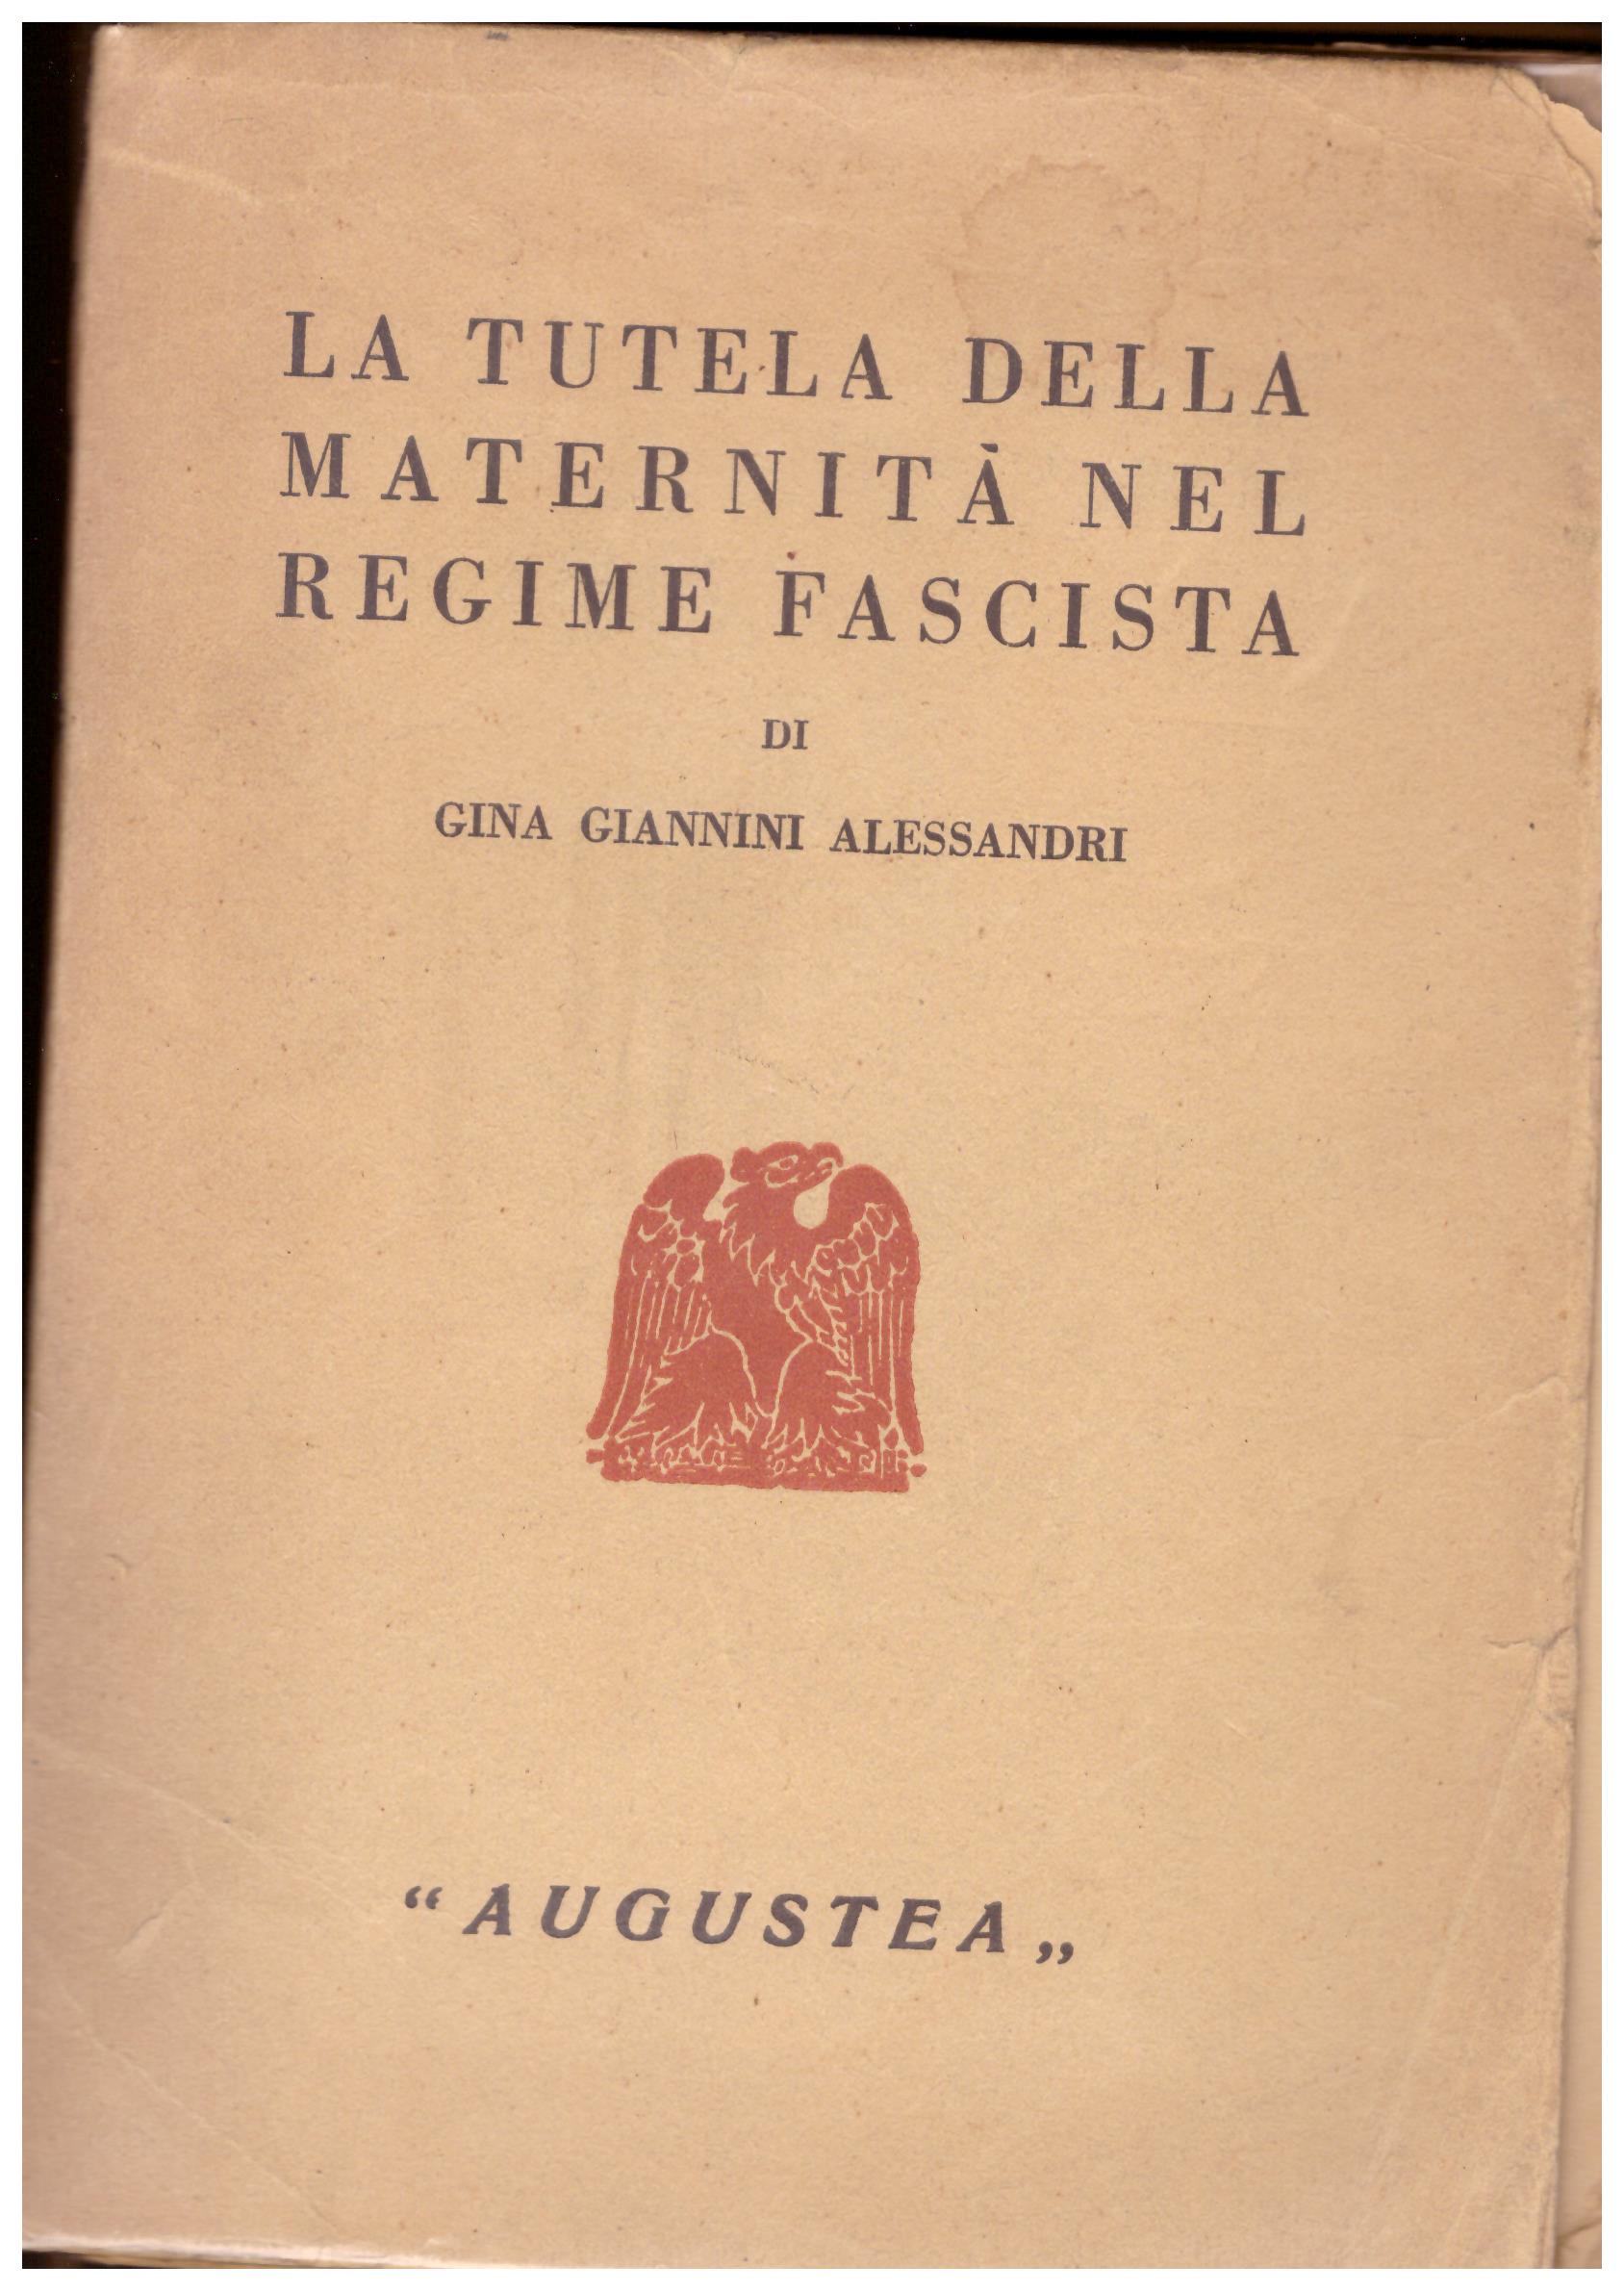 La tutela della maternità nel regime fascista.